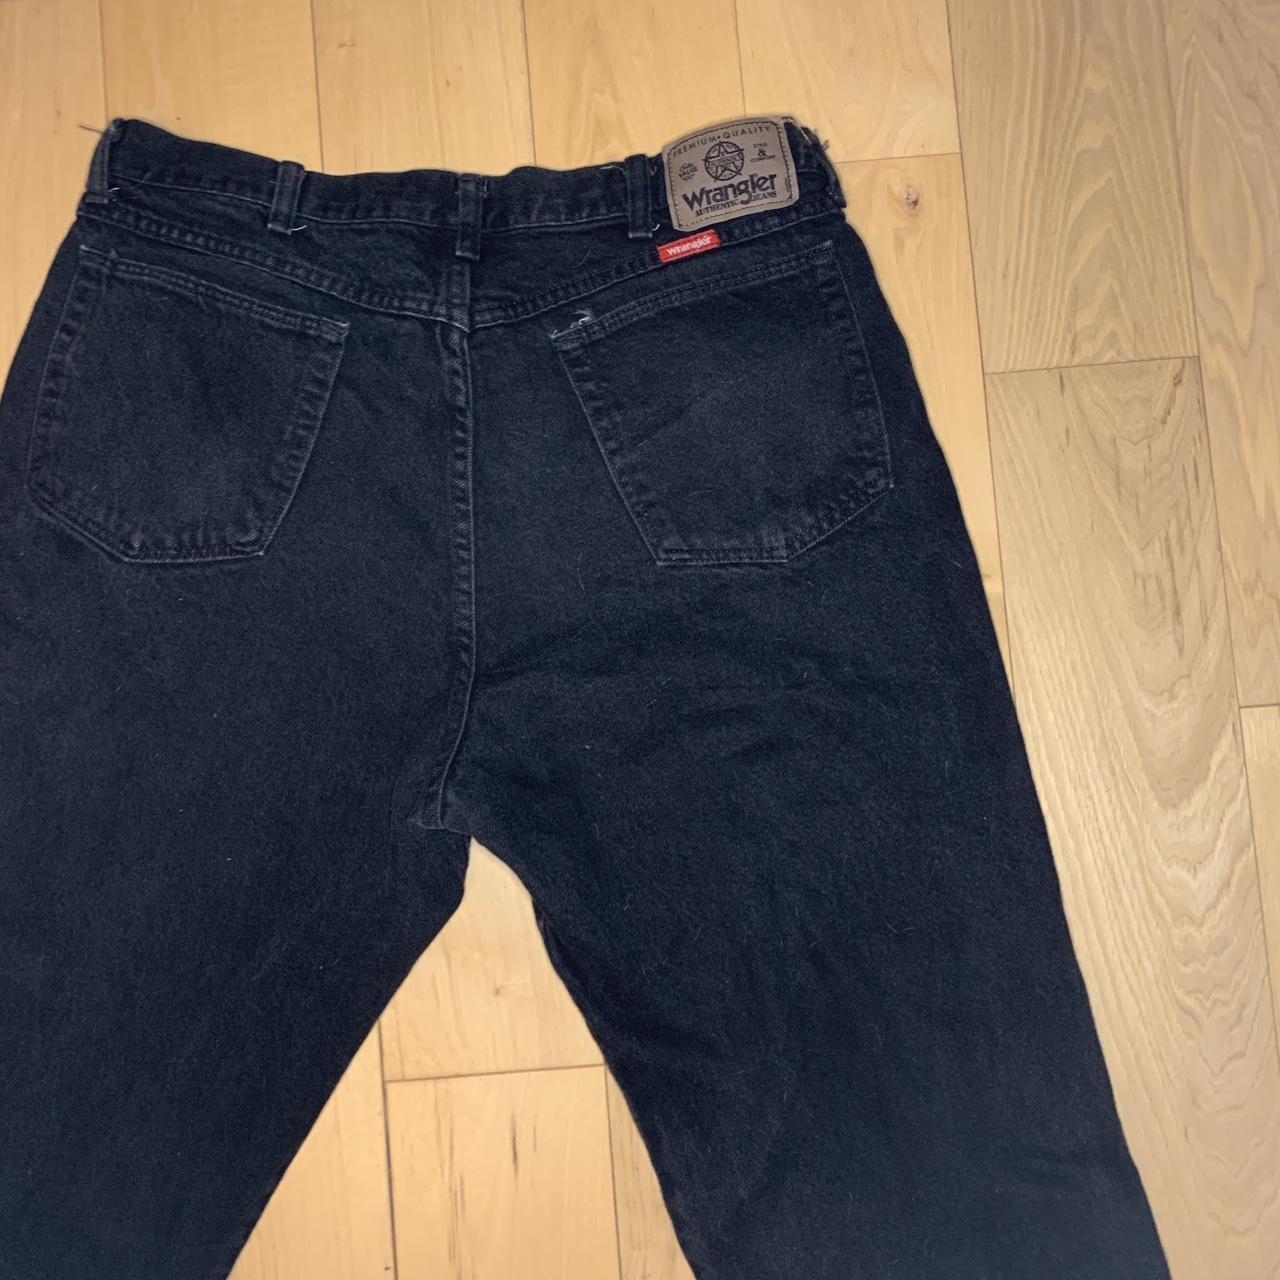 Wrangler black jeans 38” 30” Vintage Excellent... - Depop